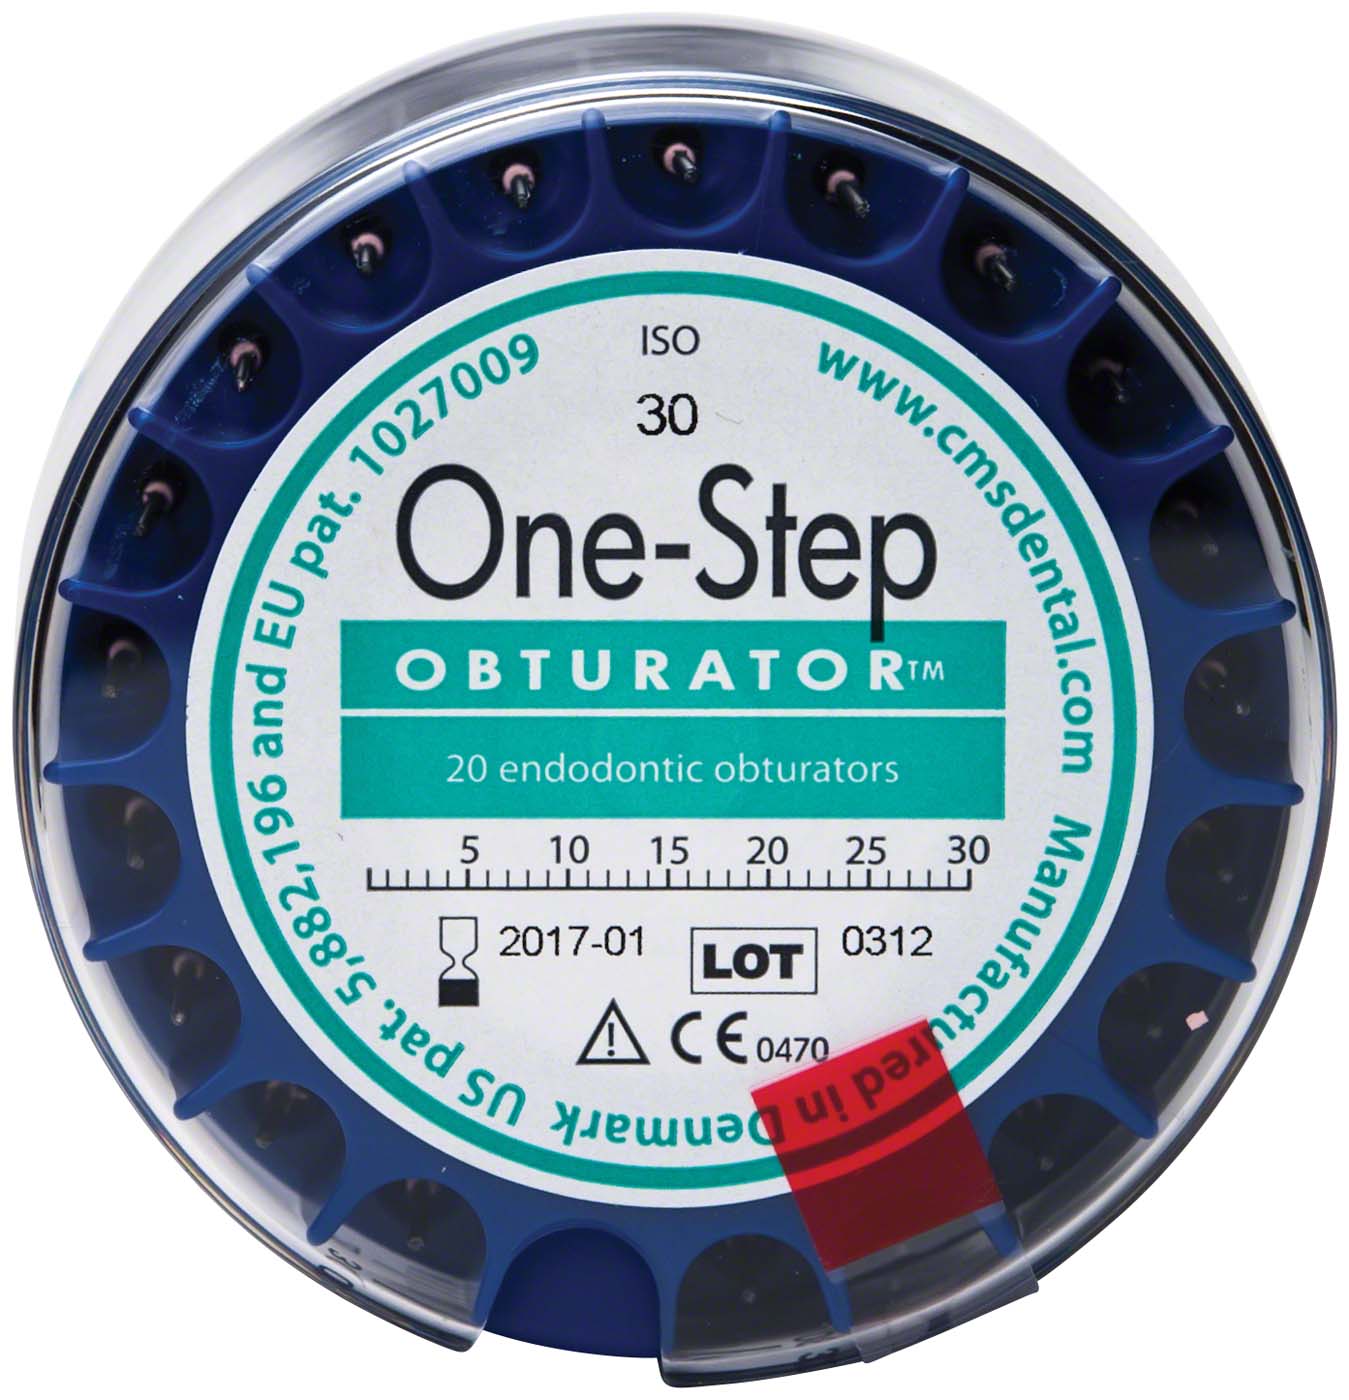 One-Step Obturator™ Loser